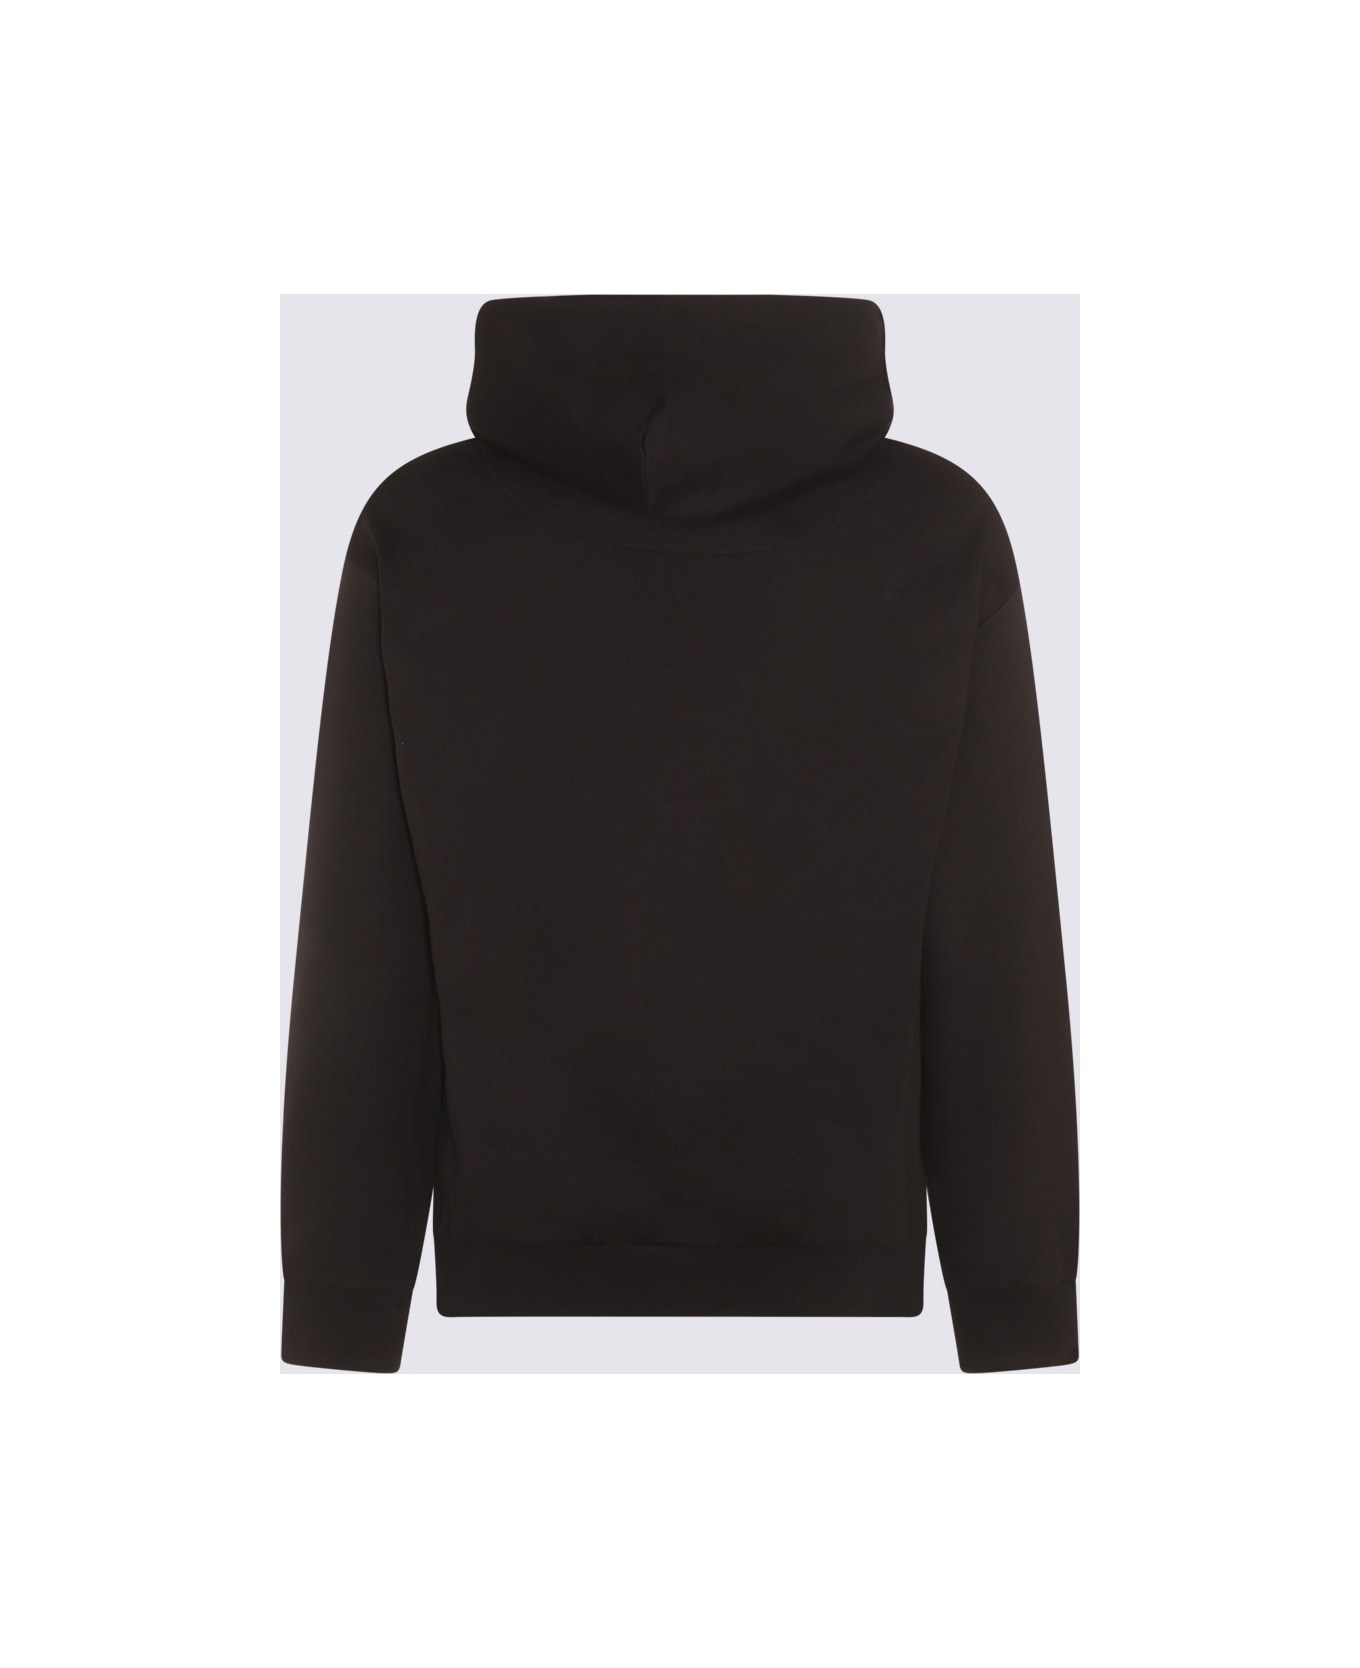 Vivienne Westwood Black Multicolour Cotton Sweatshirt - Black